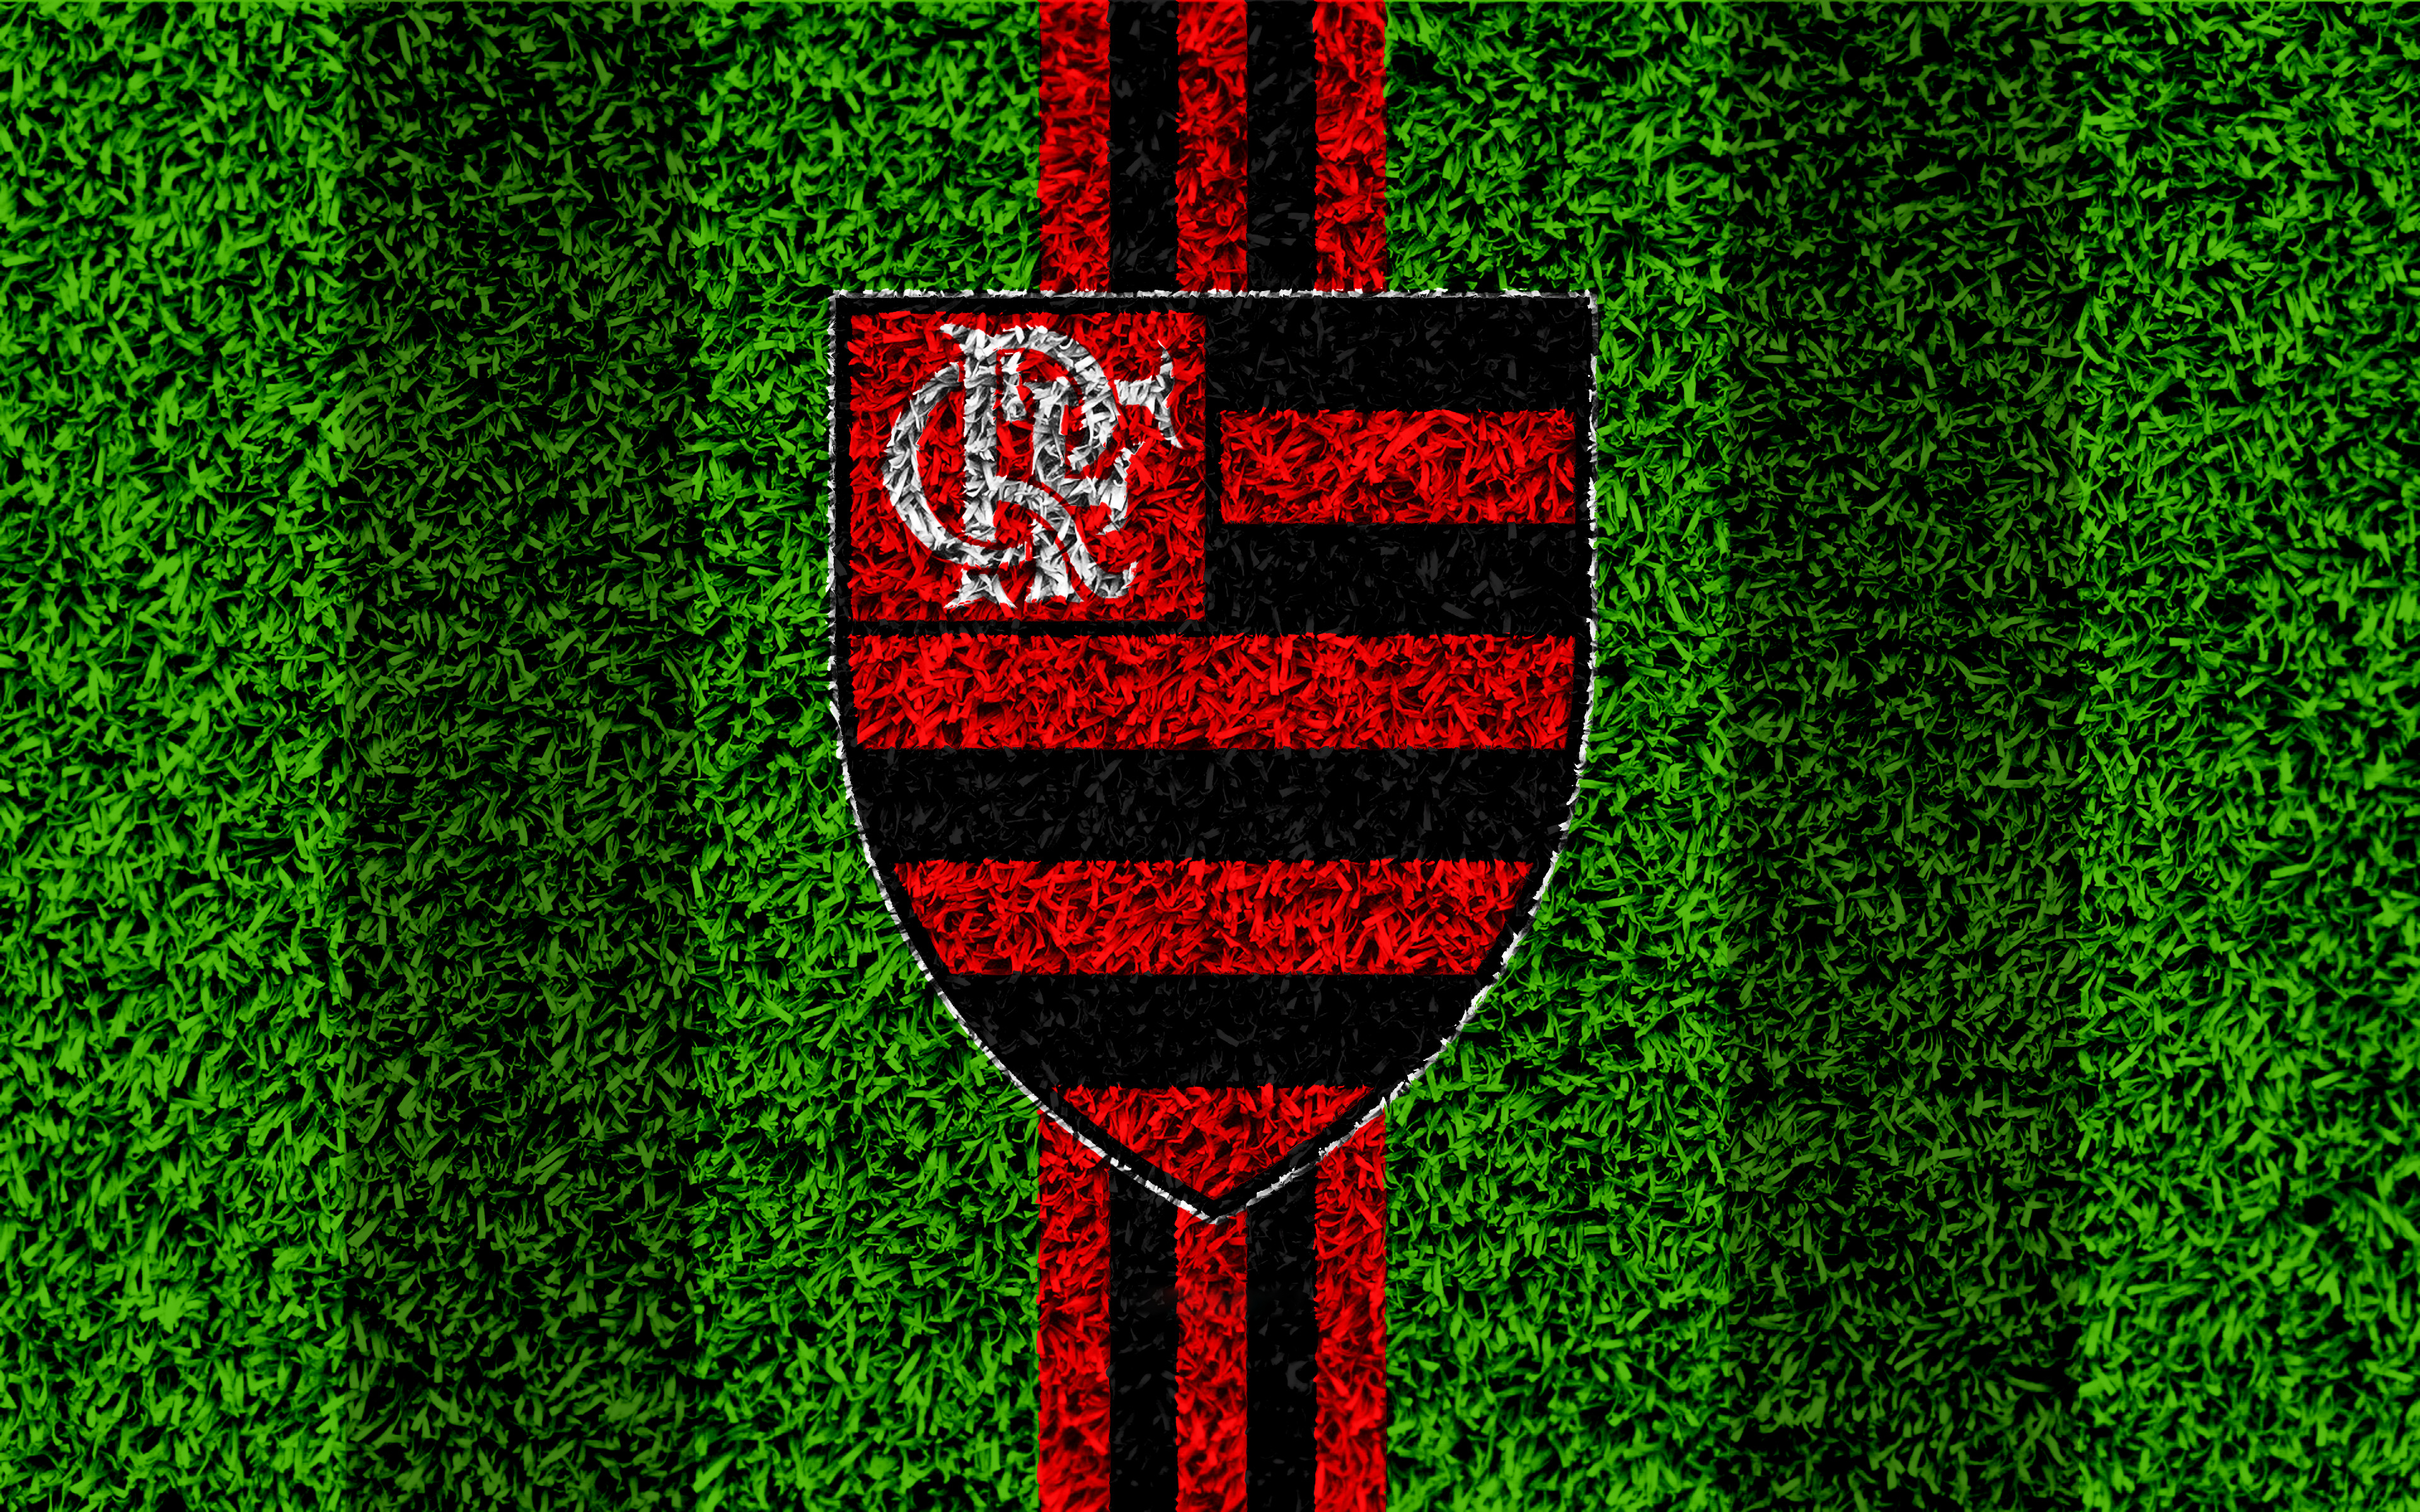 clube de regatas do flamengo, soccer, sports, logo